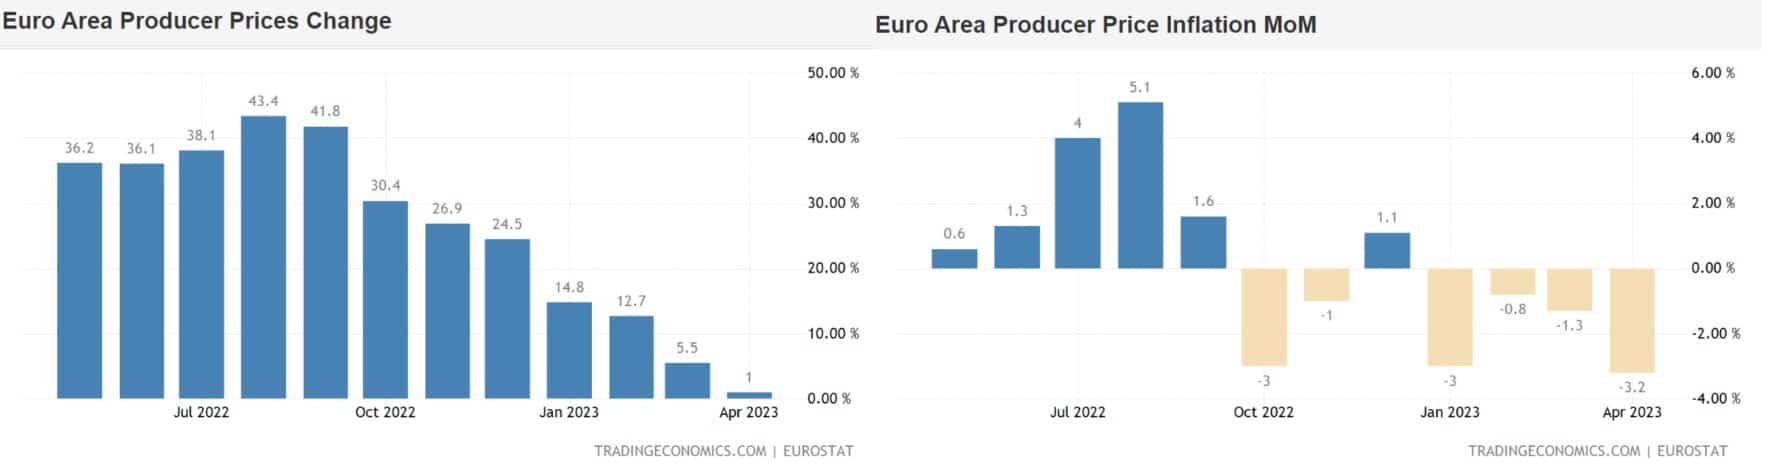 Pokles cenového indexu PPI pro Eurozónu, 